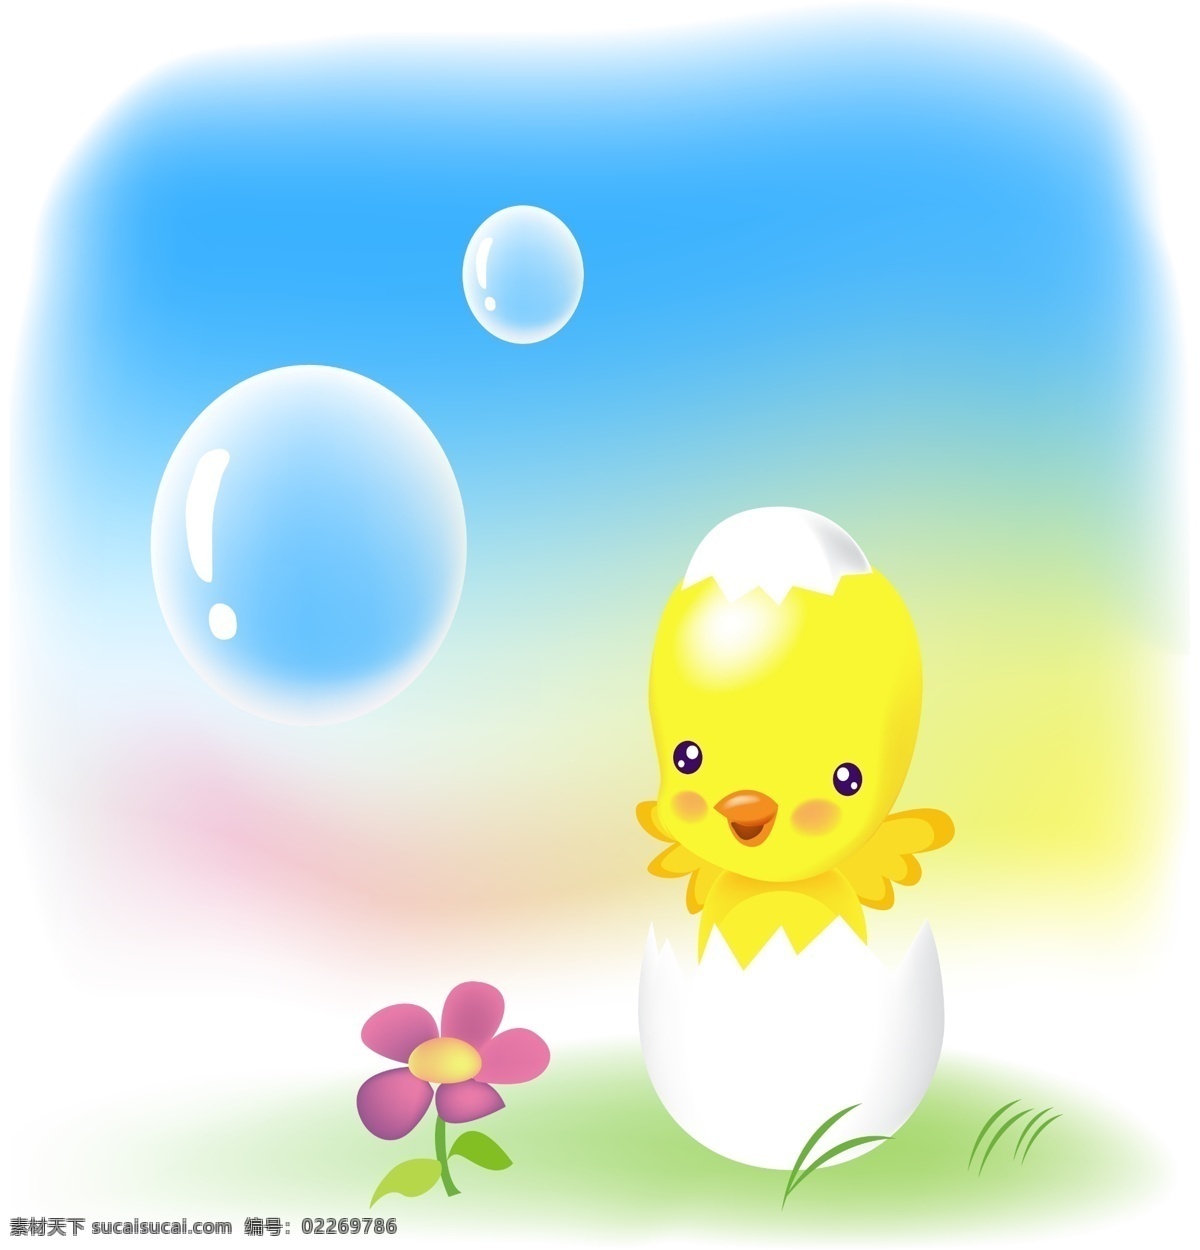 动漫动画 卡通动物 动漫风景 水球 可爱小鸡 小鸡 美丽 风 卡通 风景 蛋壳 鸡蛋壳 小花 草地 风景漫画